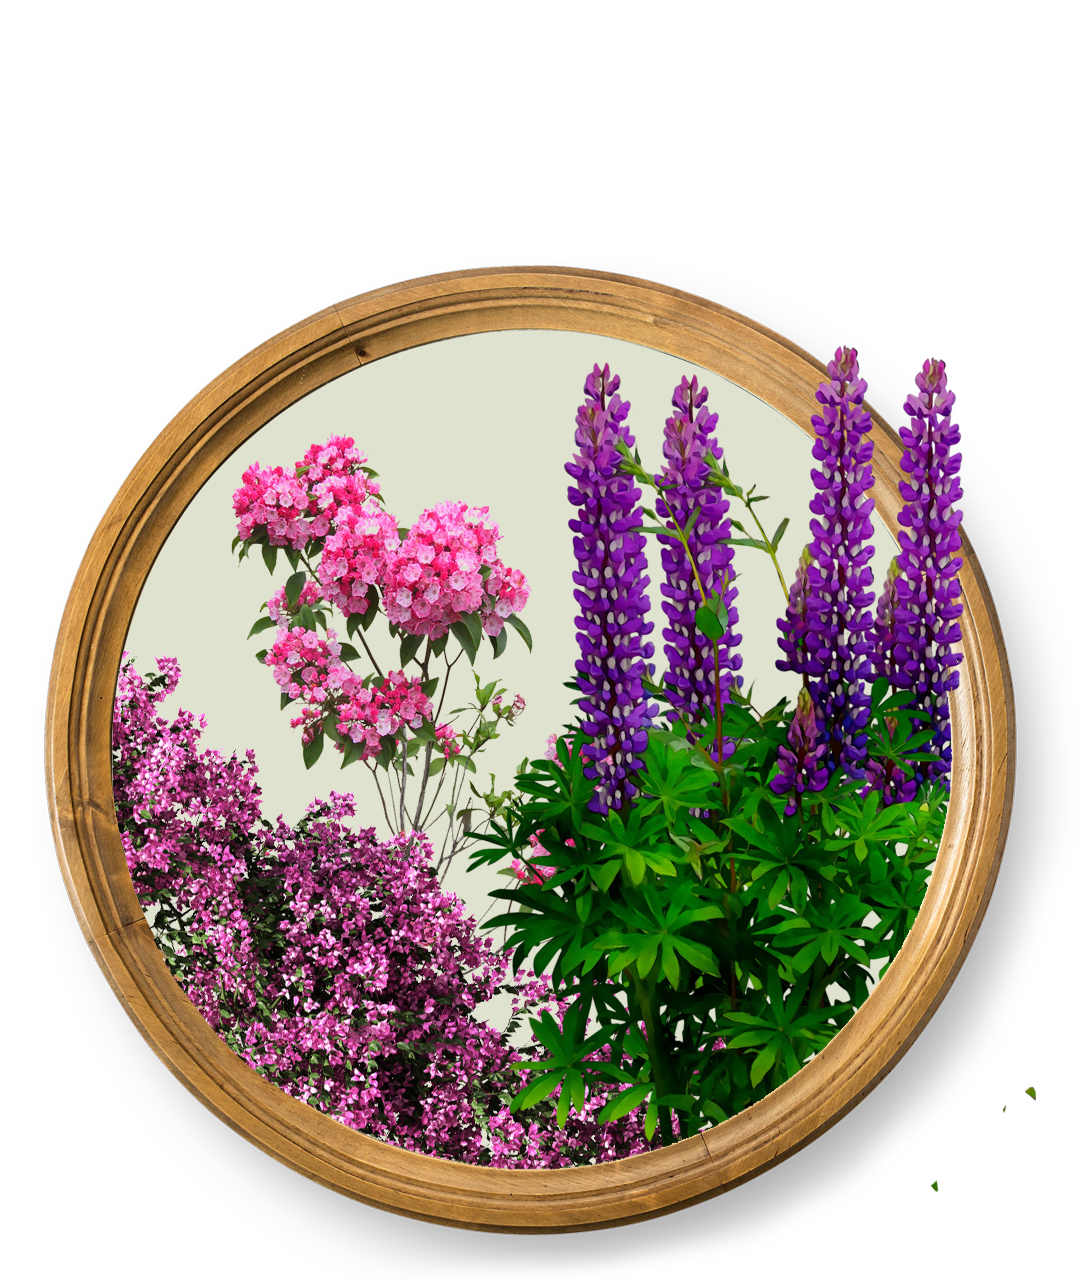 Vybornų medelynas - daugiametės gėlės